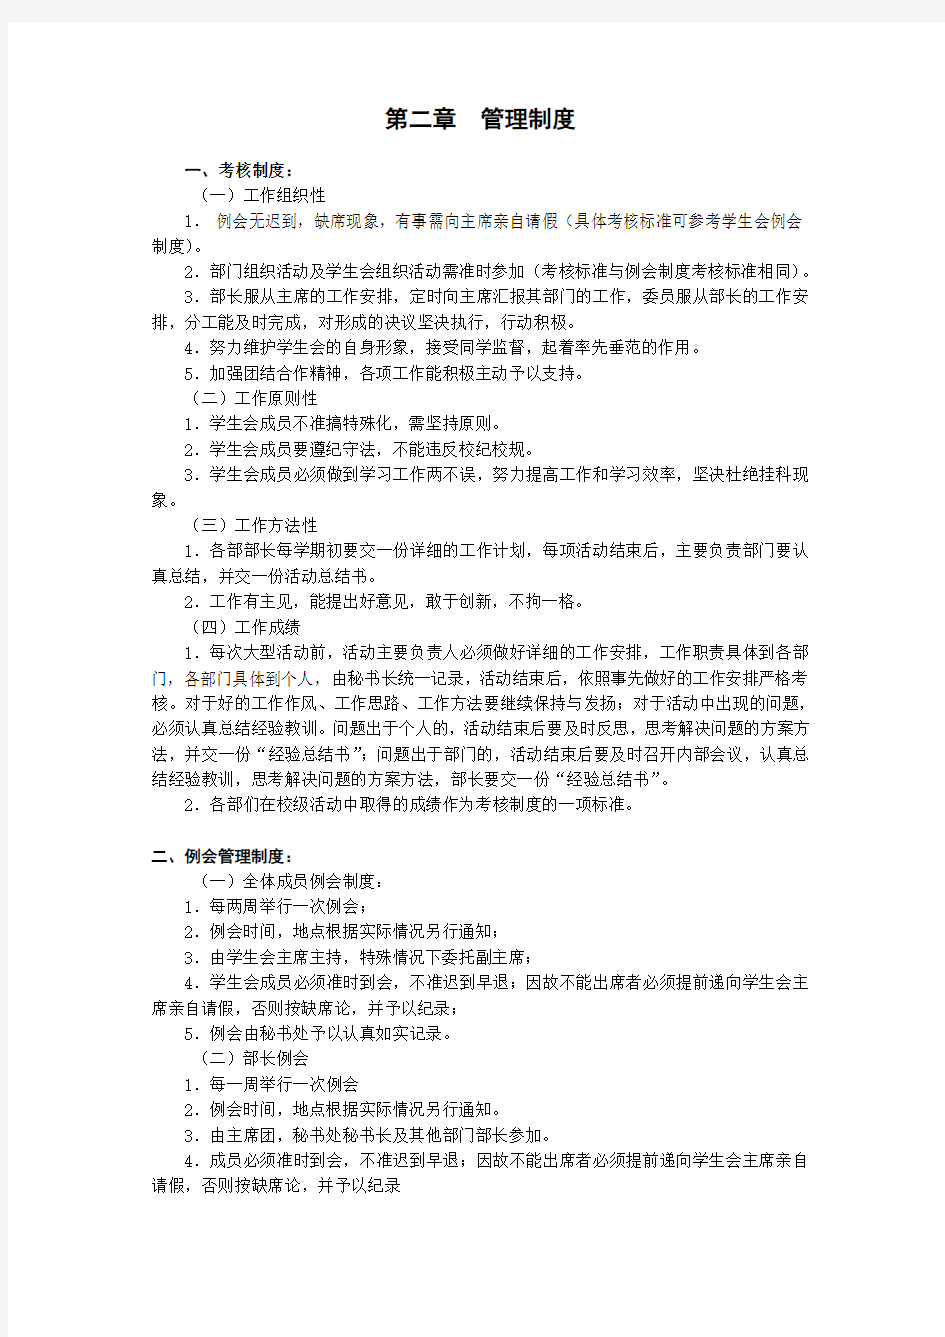 武汉理工大学管理学院学生会规章制度